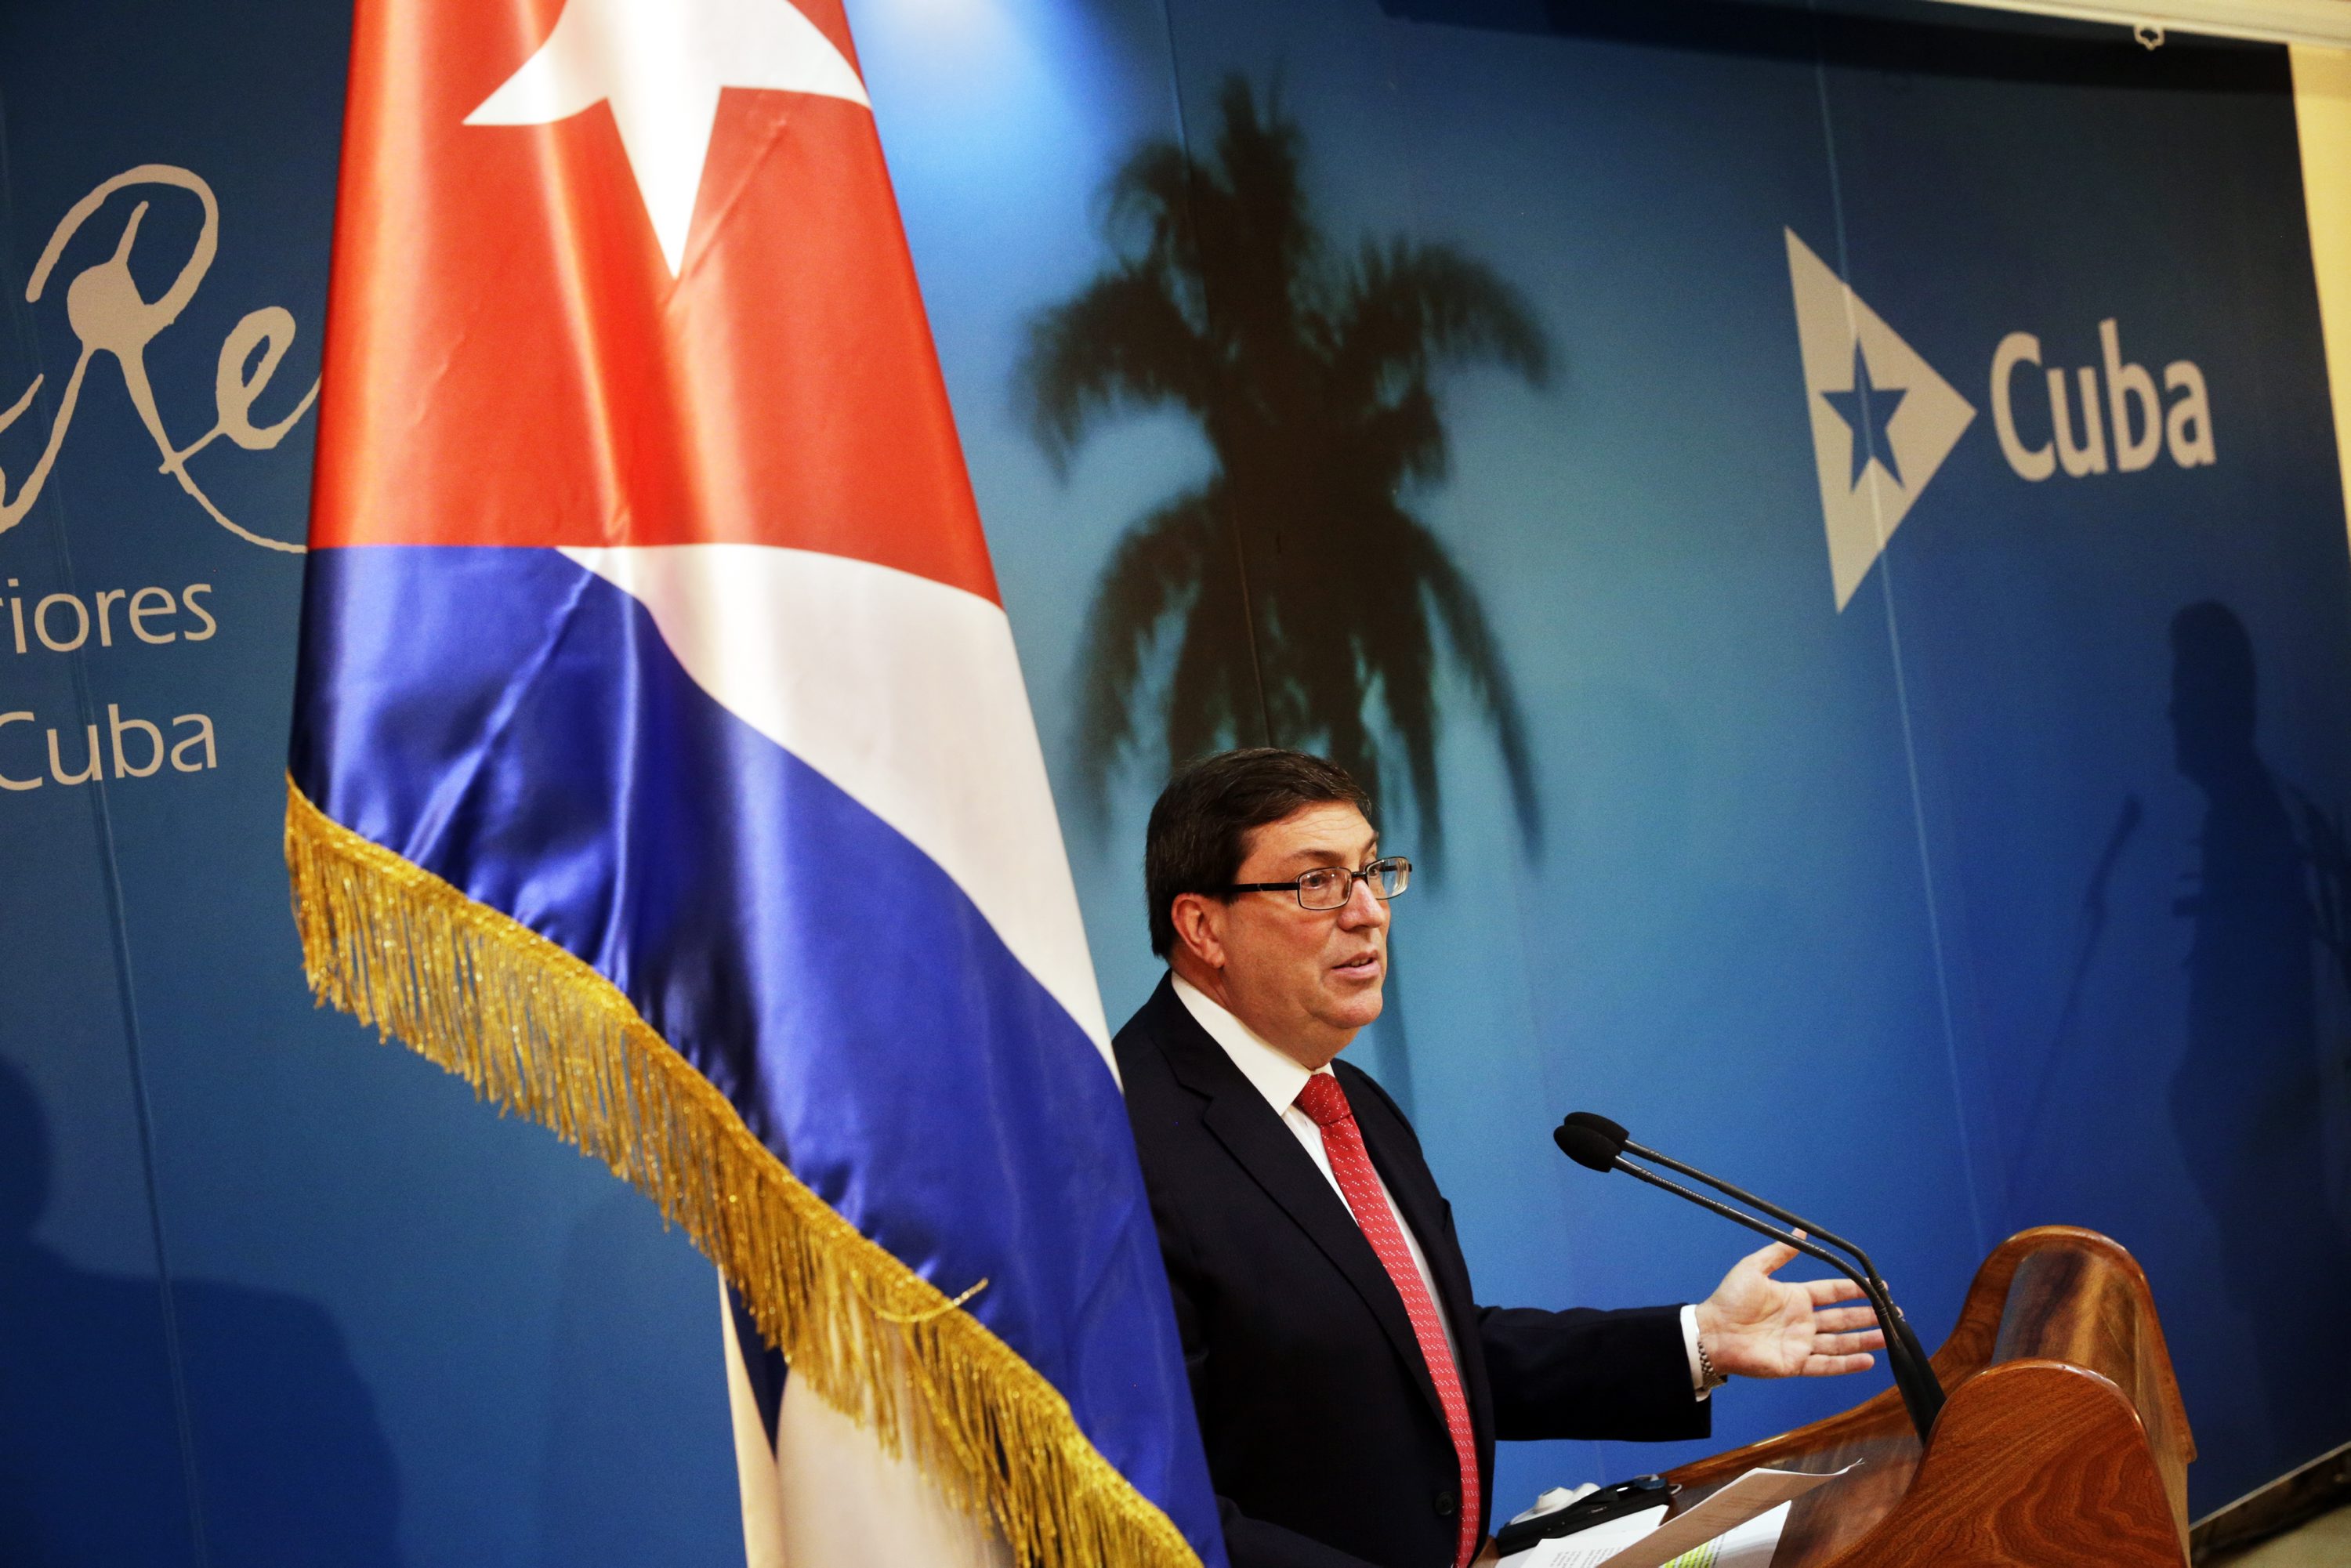 Trump no tiene autoridad moral para criticar a Cuba, dice canciller cubano